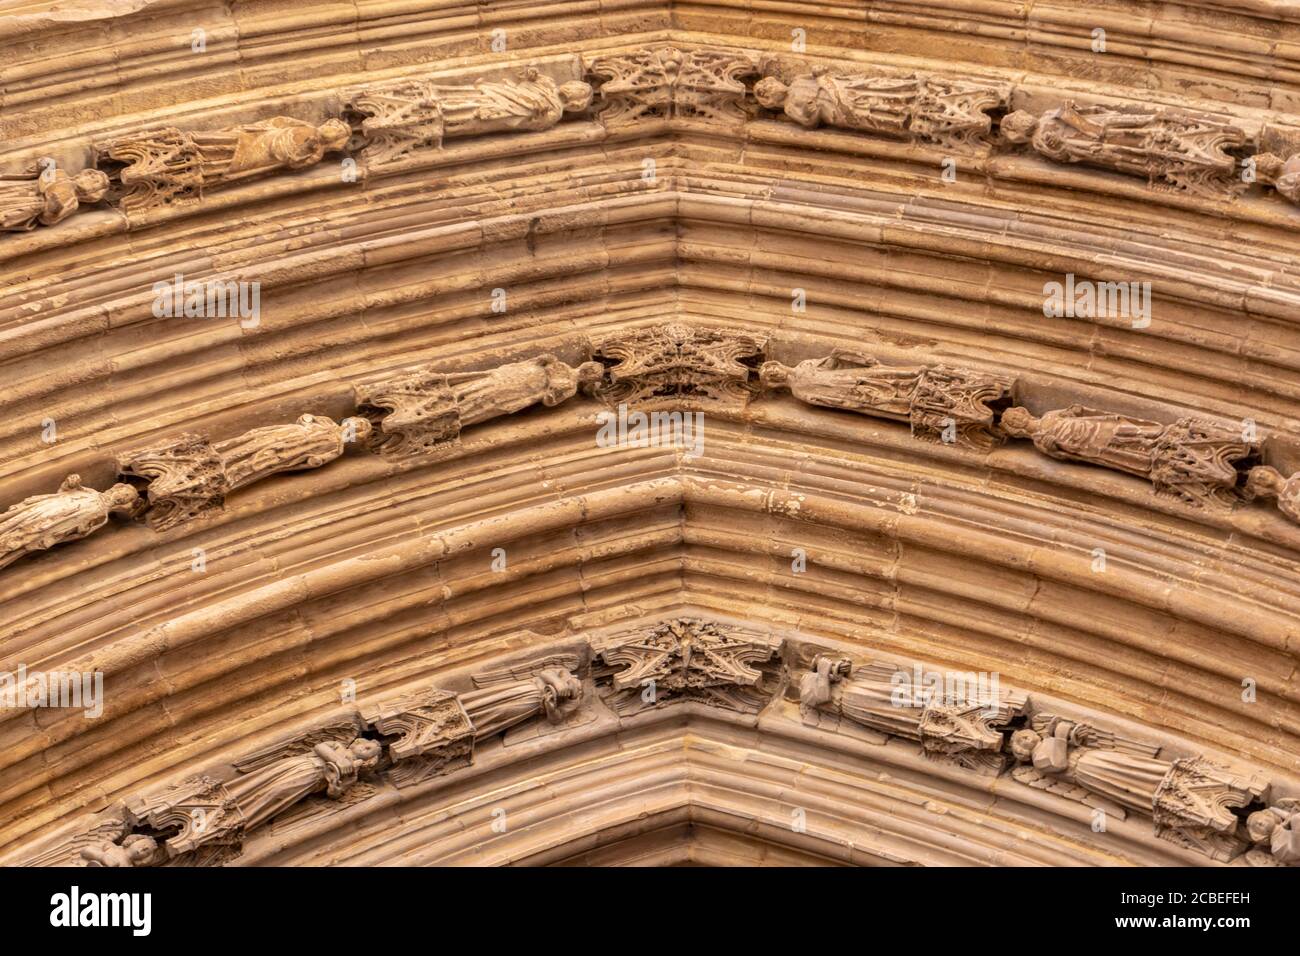 VALENCE, ESPAGNE - 15 JUILLET 2020: Bas-relief des personnages sur la façade gothique de la cathédrale de Valence Banque D'Images